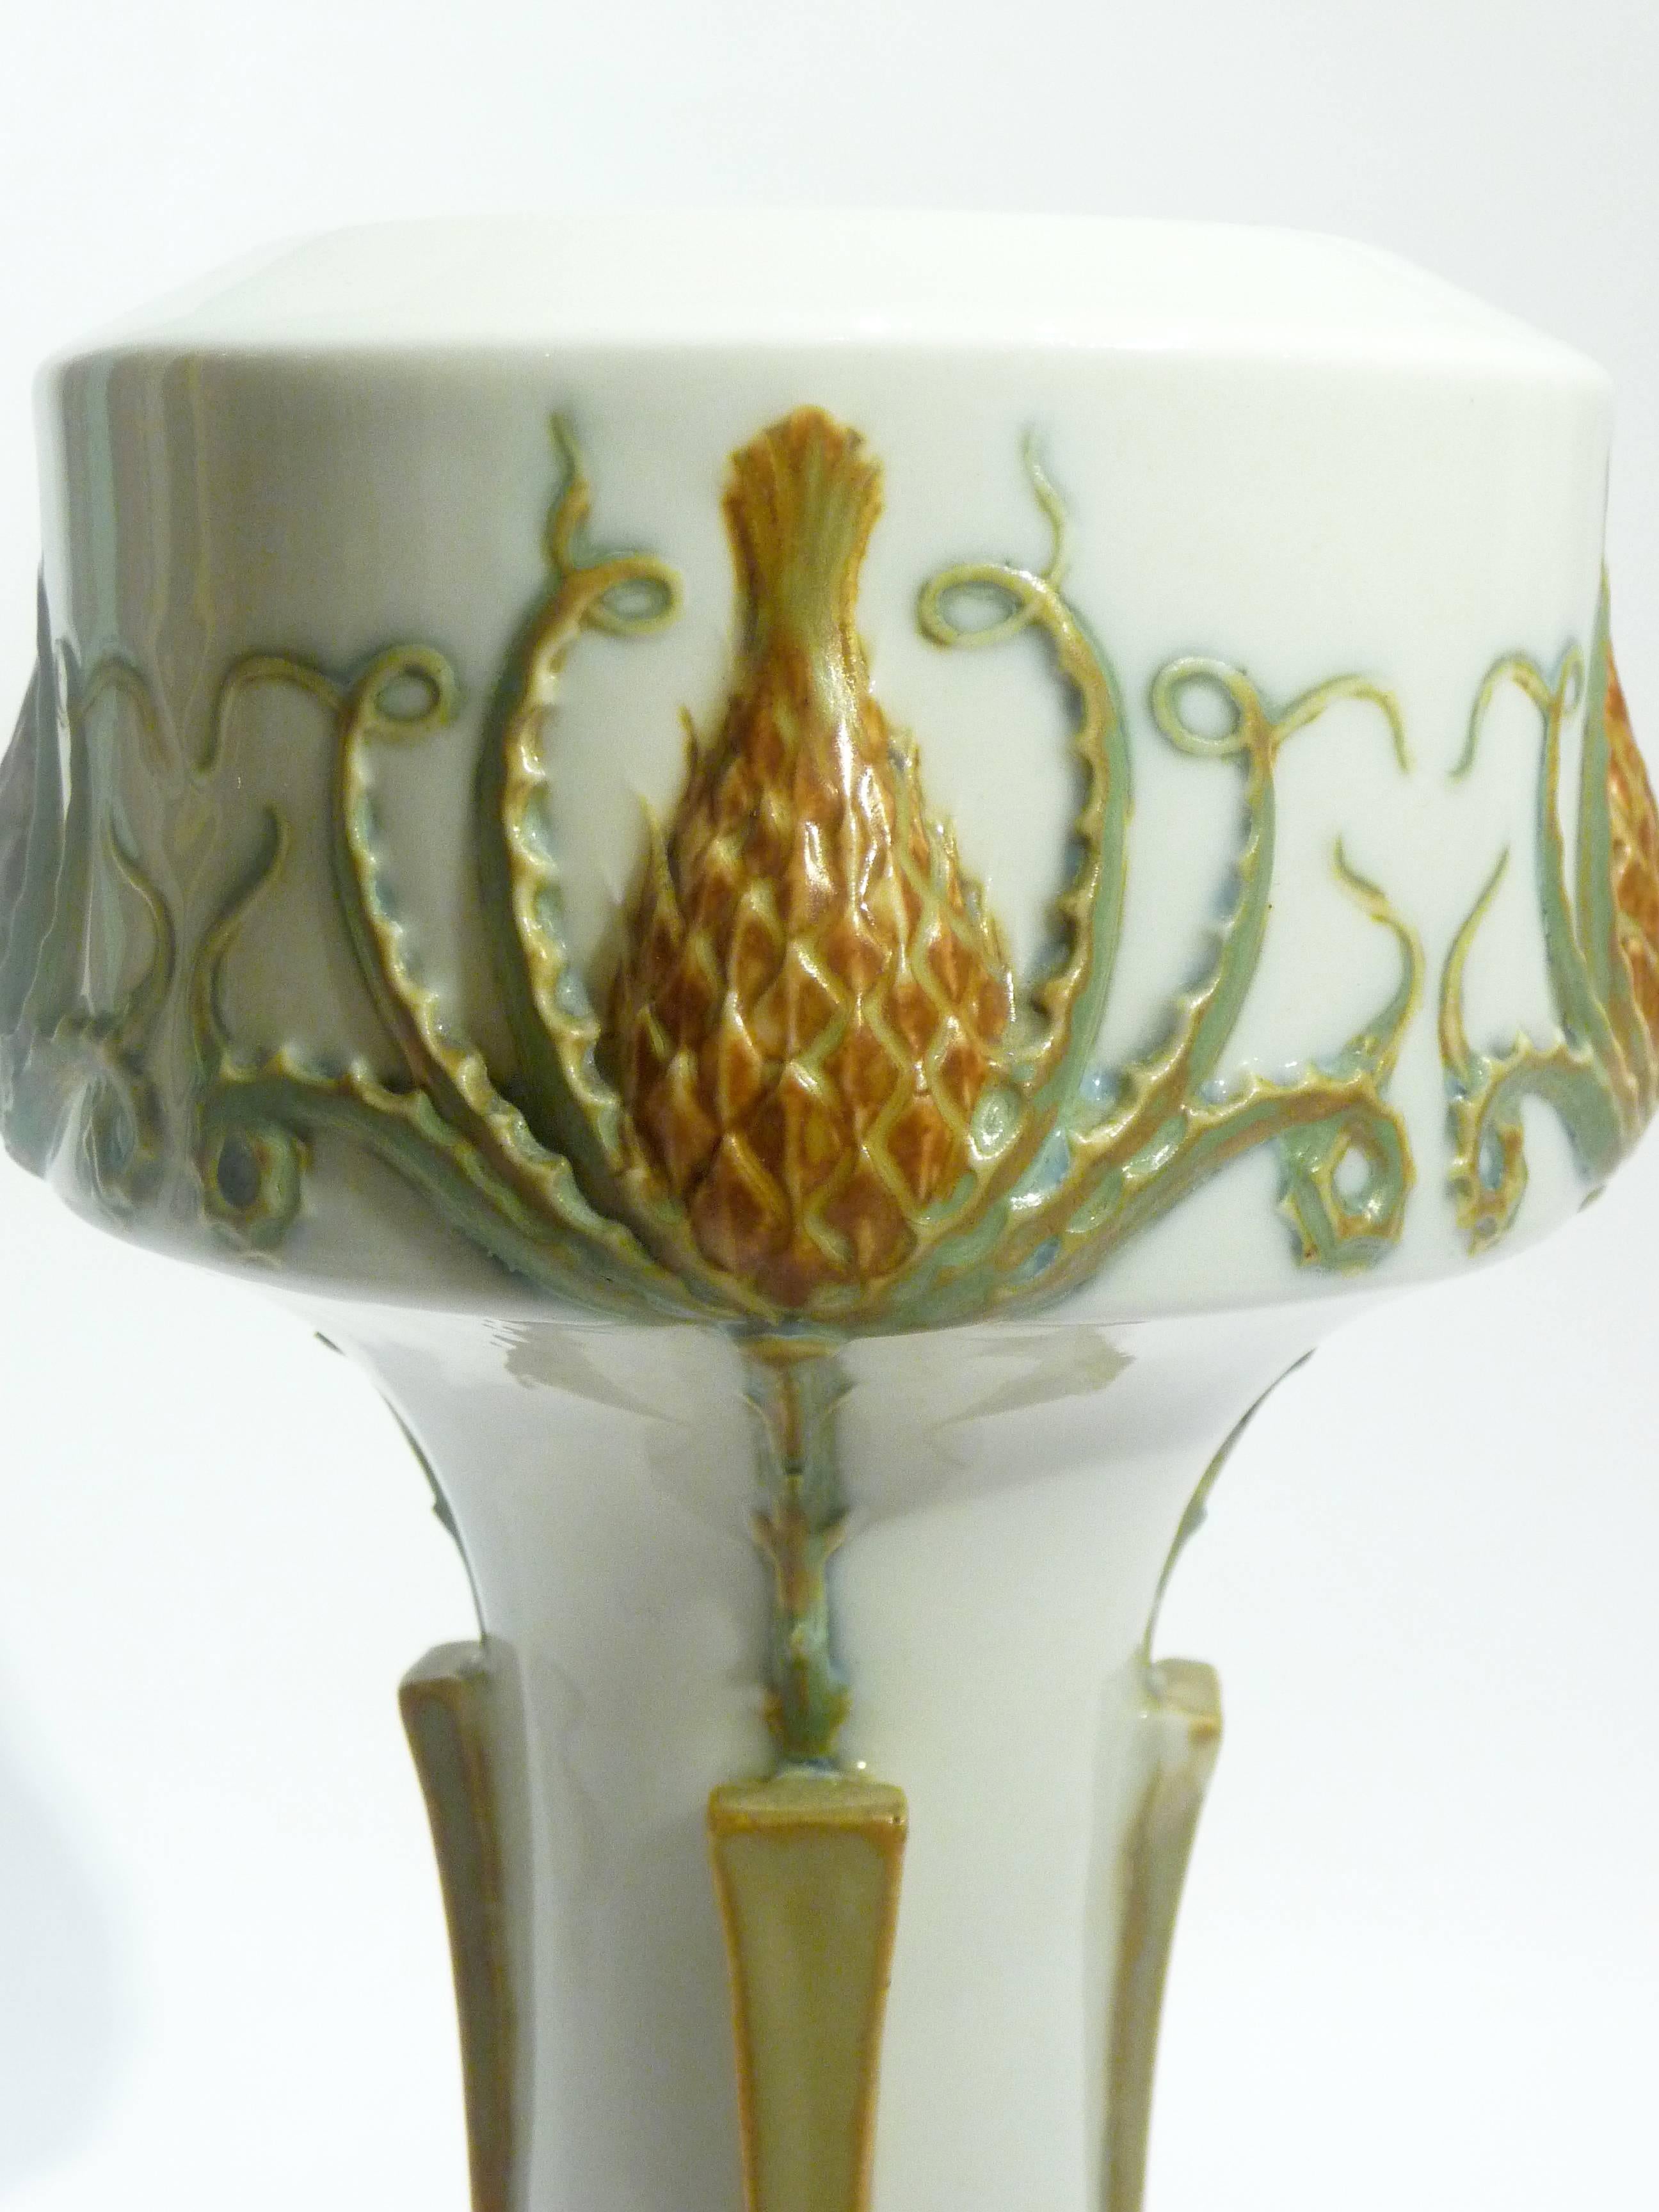 French Manufacture Nationale de Sèvres, an Art Nouveau Vase, Dated 1904 For Sale